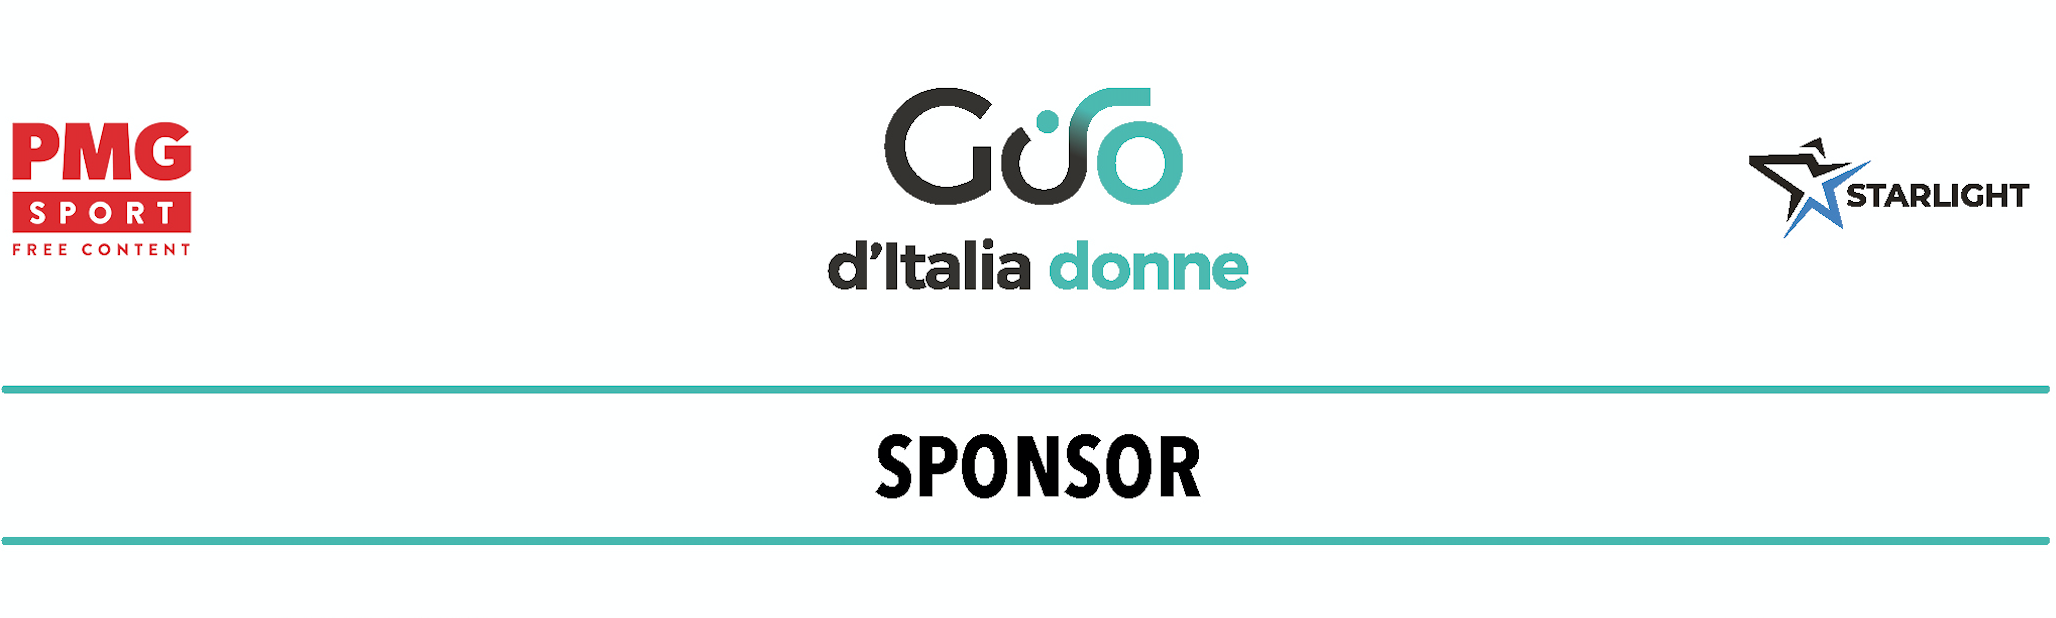 https://www.giroditaliadonne.it/it/2021/06/22/tanti-sponsor-e-partner-per-un-evento-di-grande-qualita-tecnica-e-organizzativa/